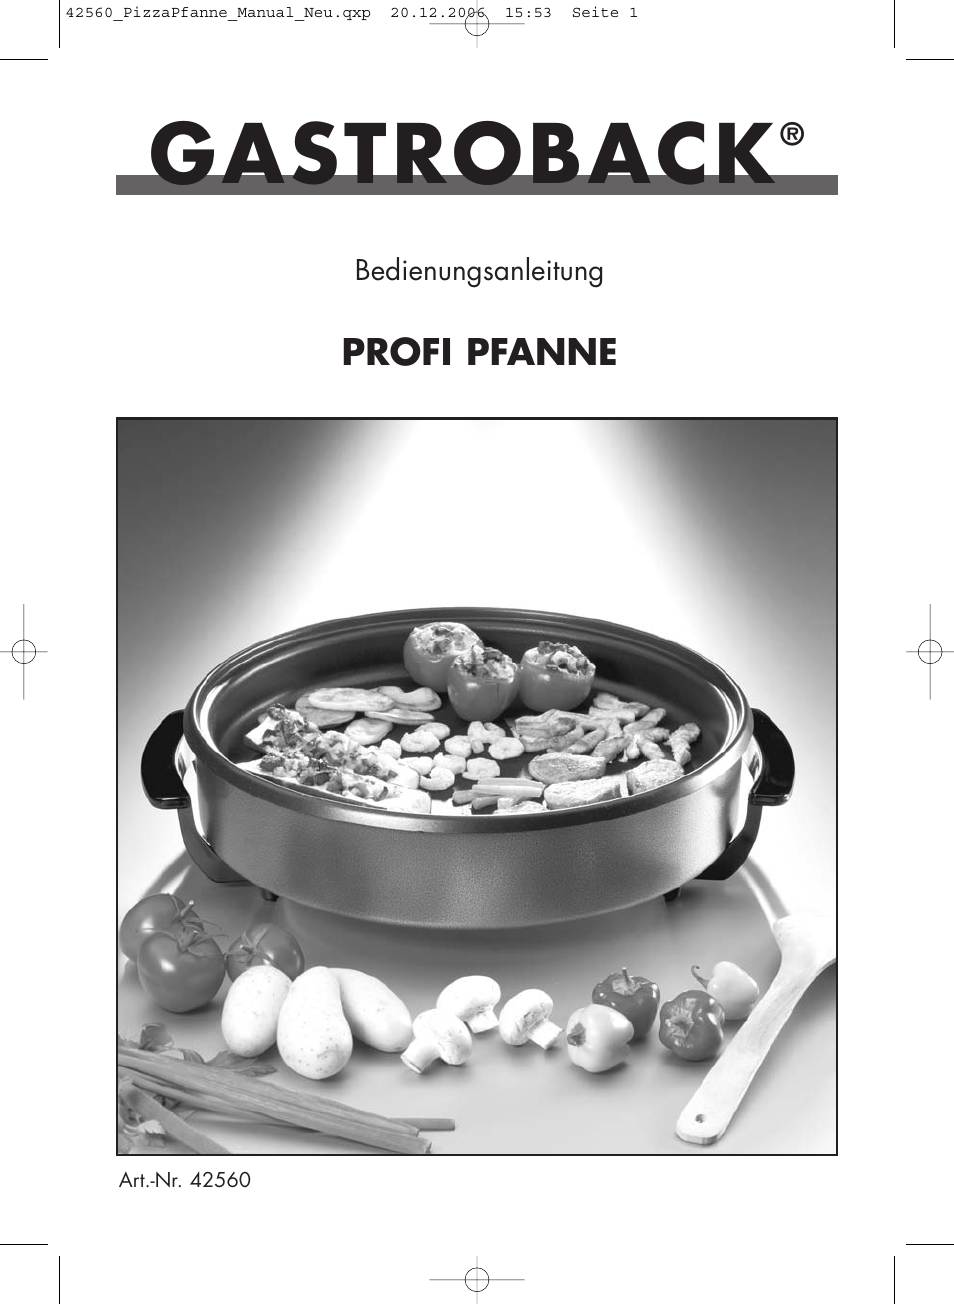 Gastroback 42560 Profi Pfanne 1400 Watt Benutzerhandbuch | Seiten: 20